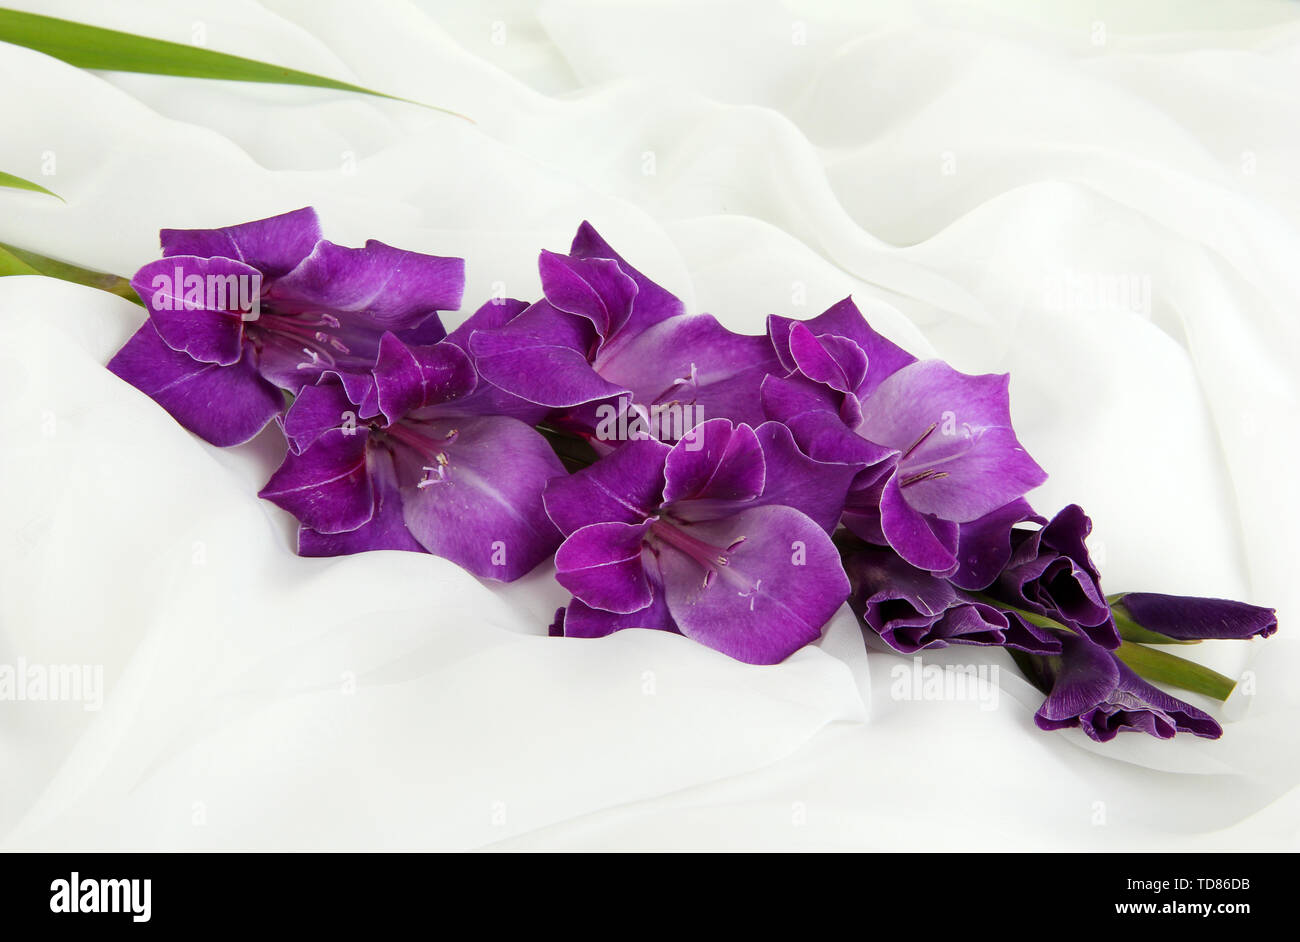 Beautiful gladiolus flower on white fabric background Stock Photo